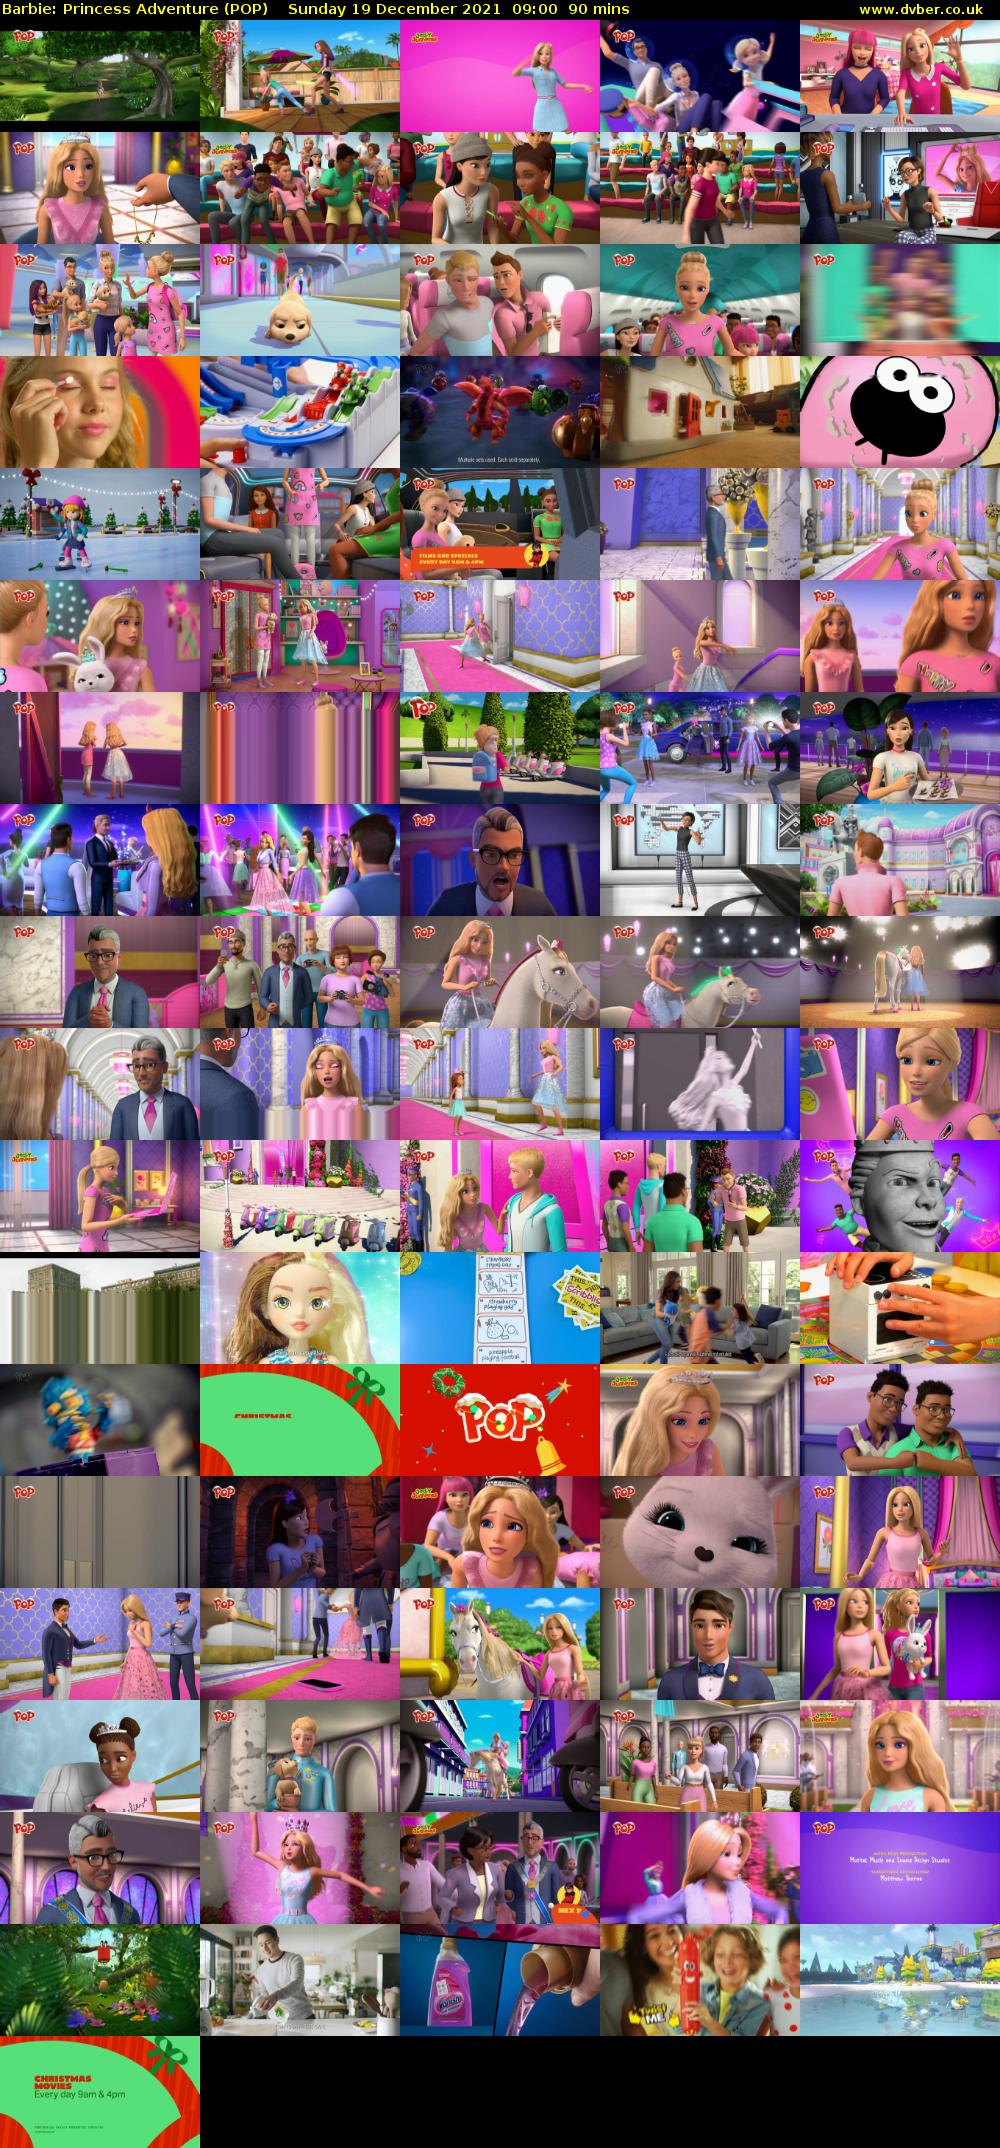 Barbie: Princess Adventure (POP) Sunday 19 December 2021 09:00 - 10:30